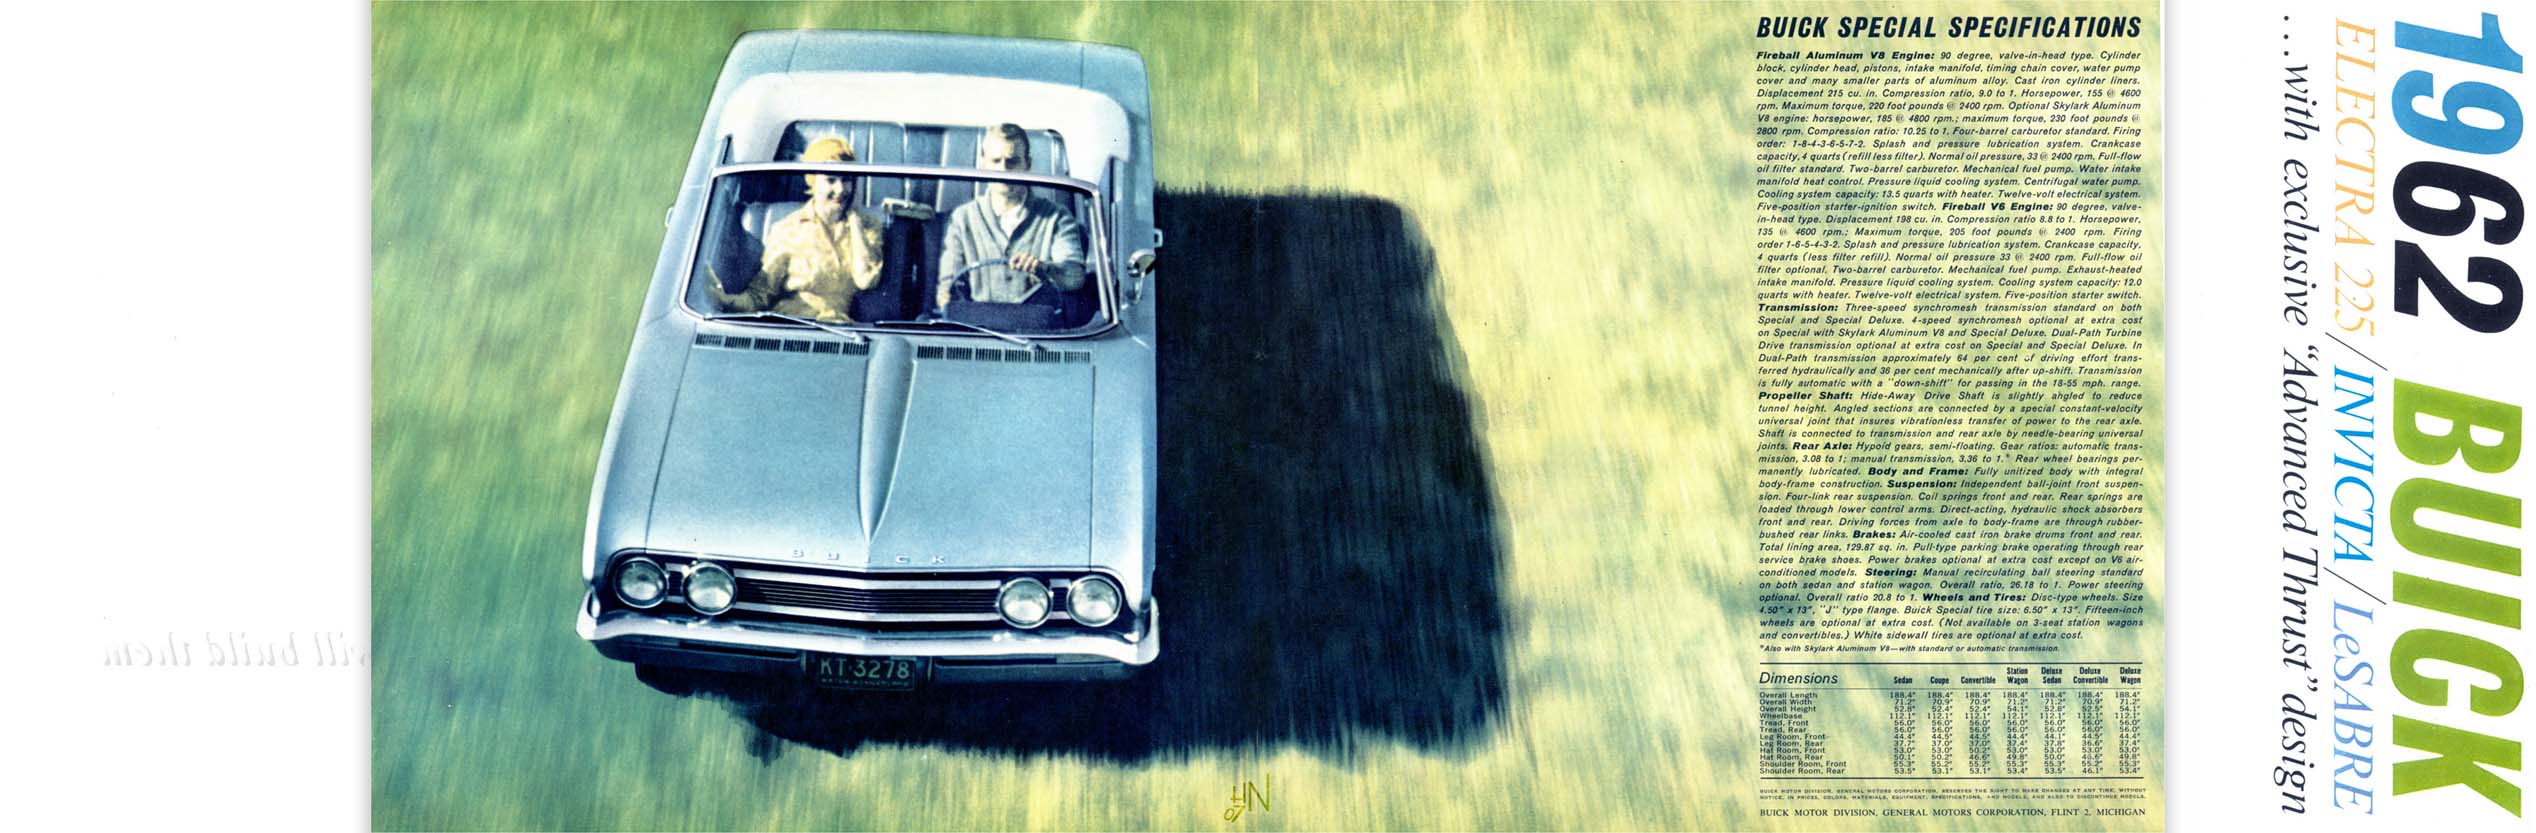 1962 Buick Full Line-14-15